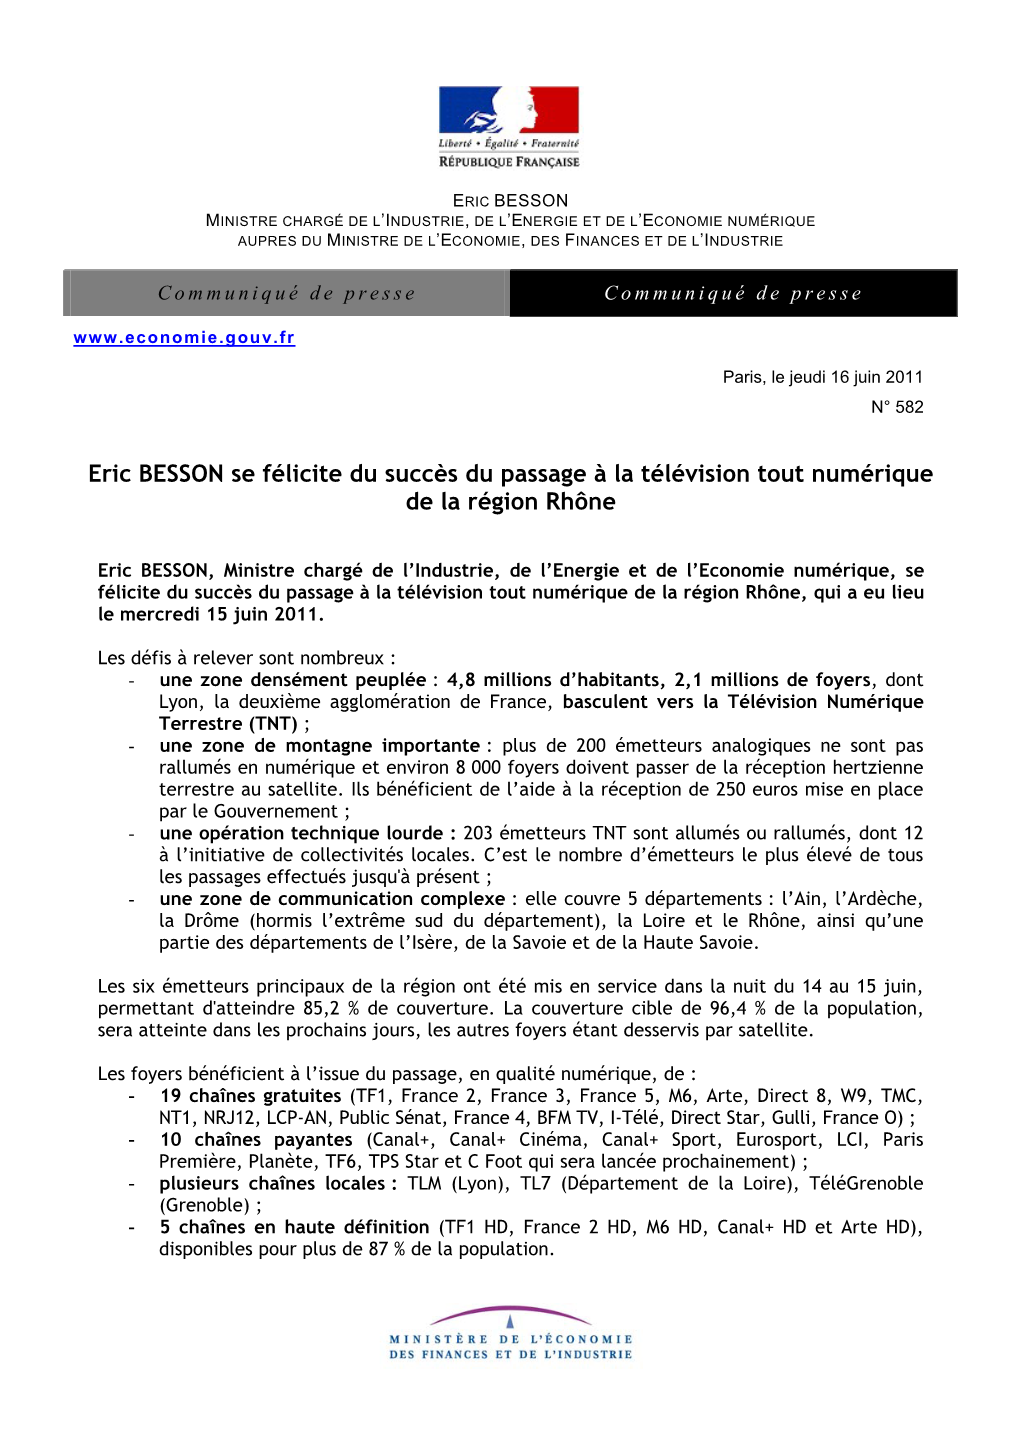 Eric BESSON Se Félicite Du Succès Du Passage À La Télévision Tout Numérique De La Région Rhône